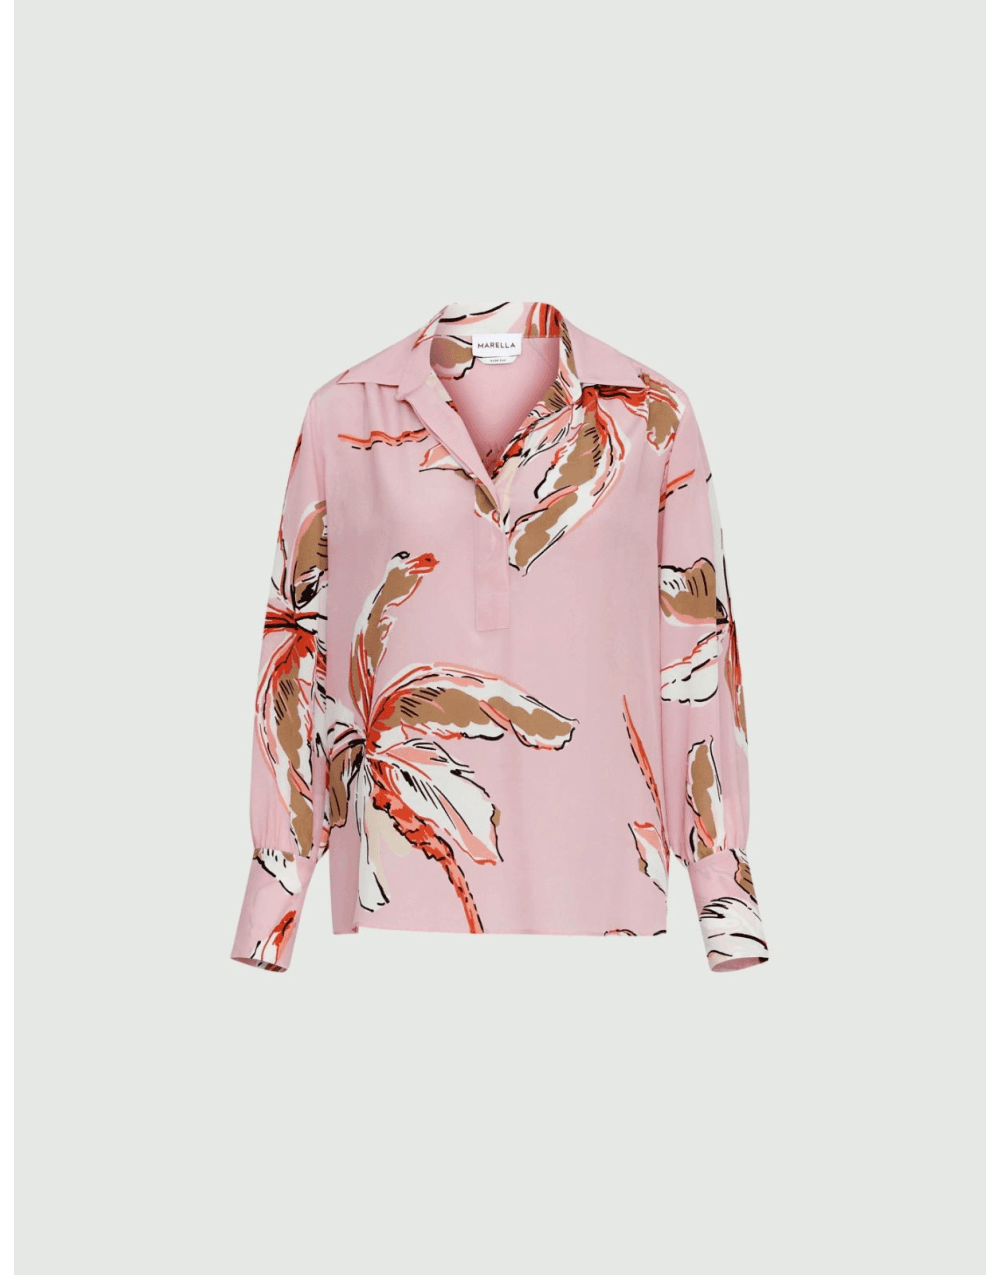 Marella Domez Palm Print Shirt Col: Pink Palms, Size: 14